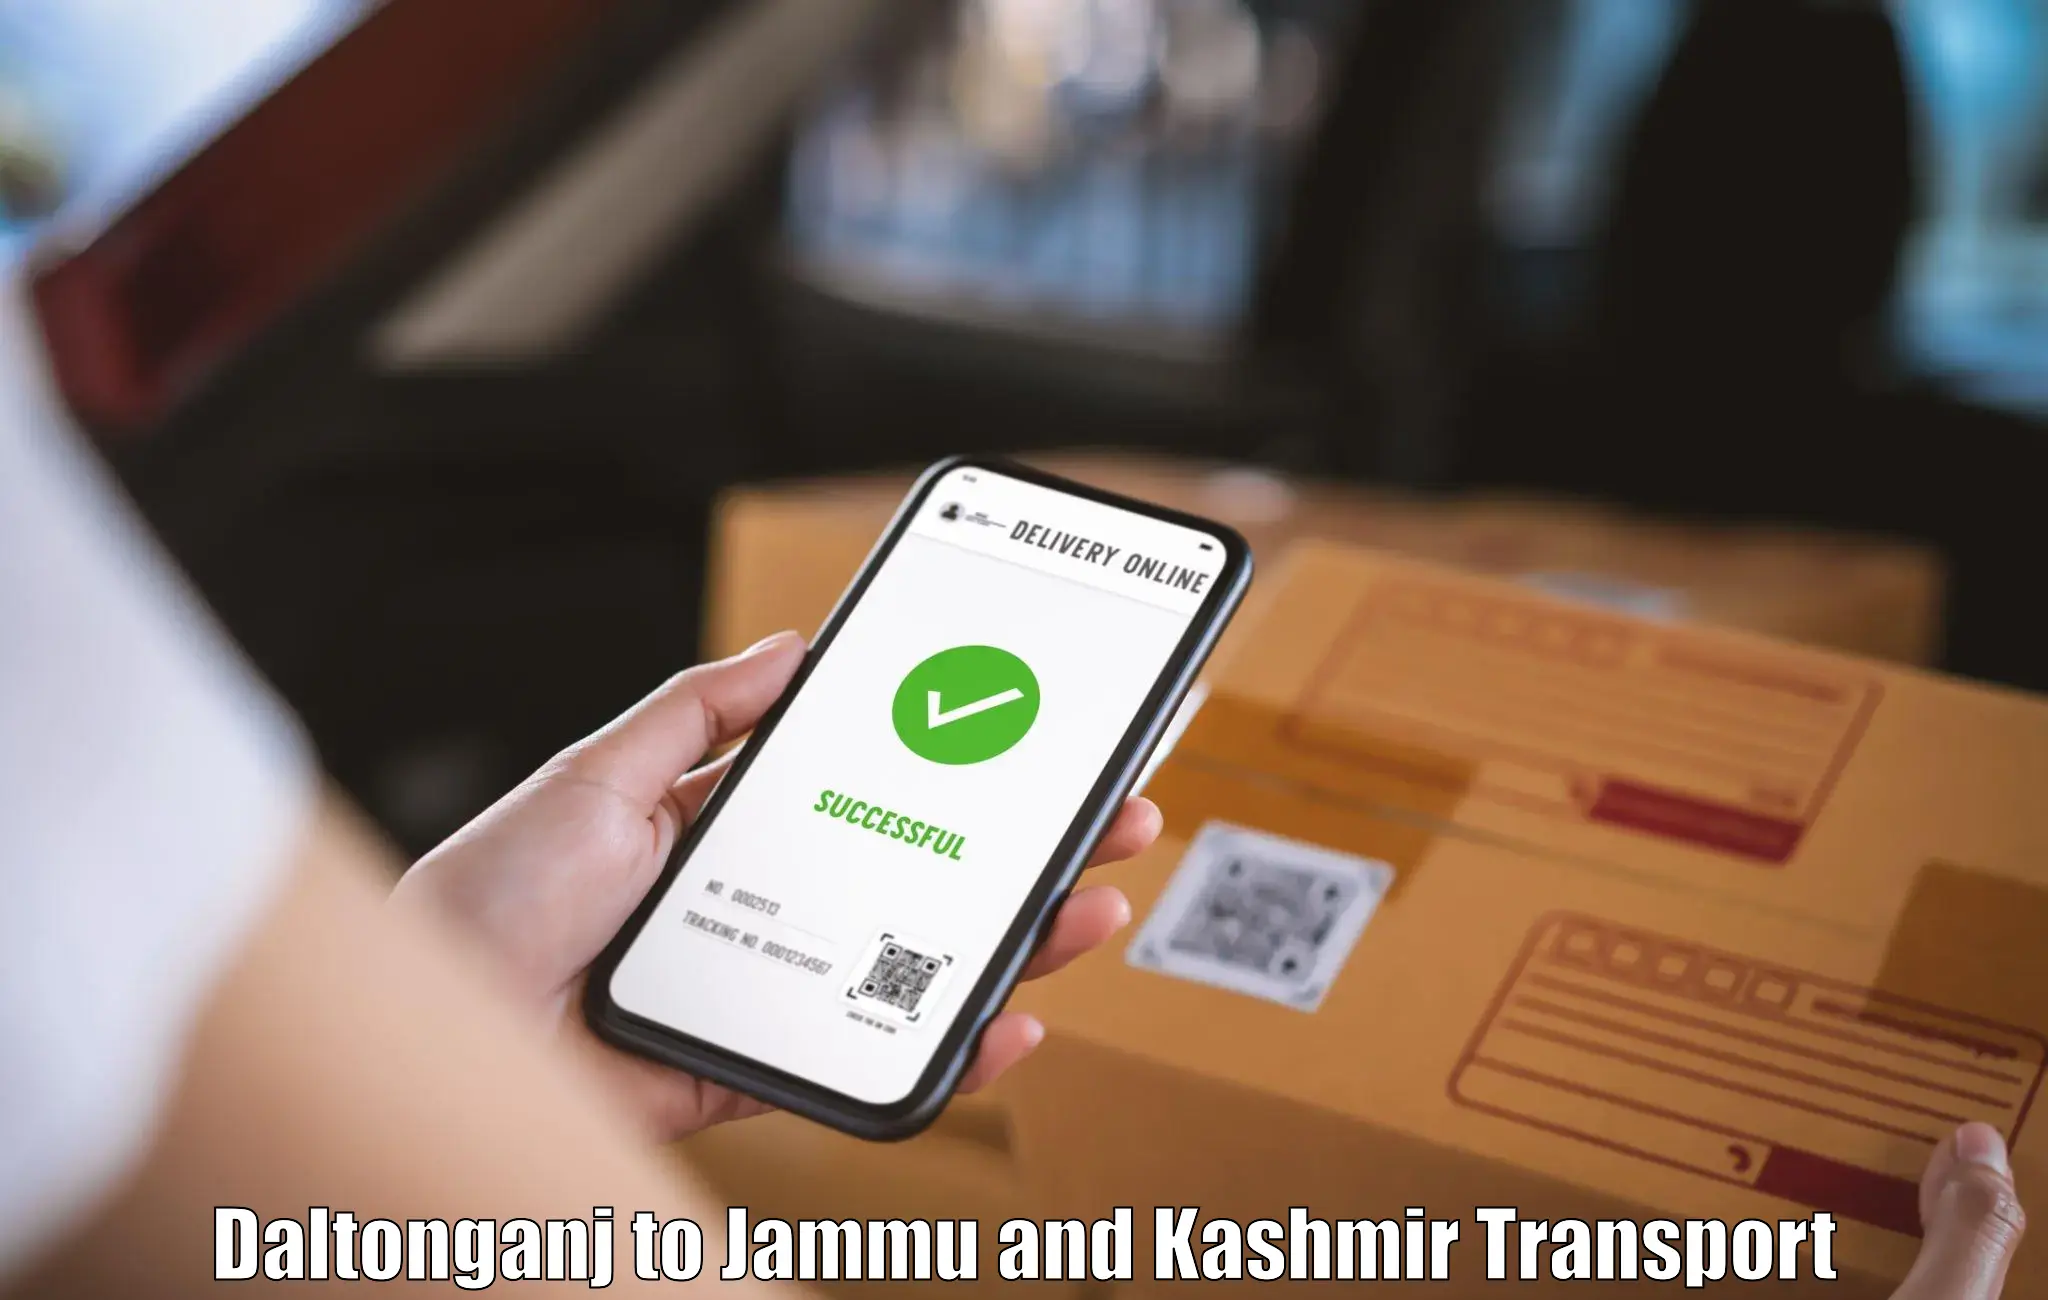 Shipping partner Daltonganj to Jammu and Kashmir